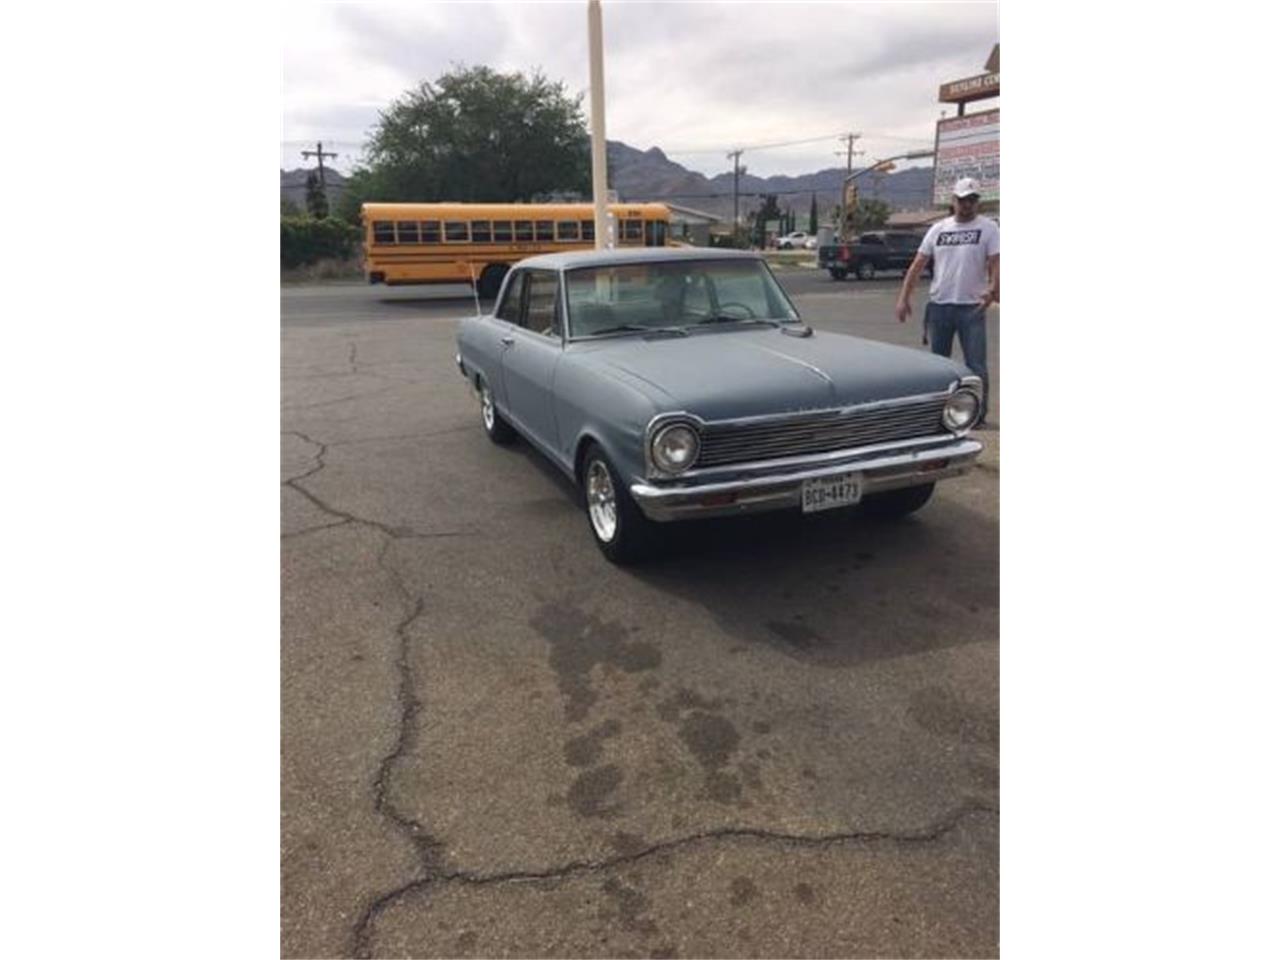 1965 Chevrolet Nova for sale in Cadillac, MI